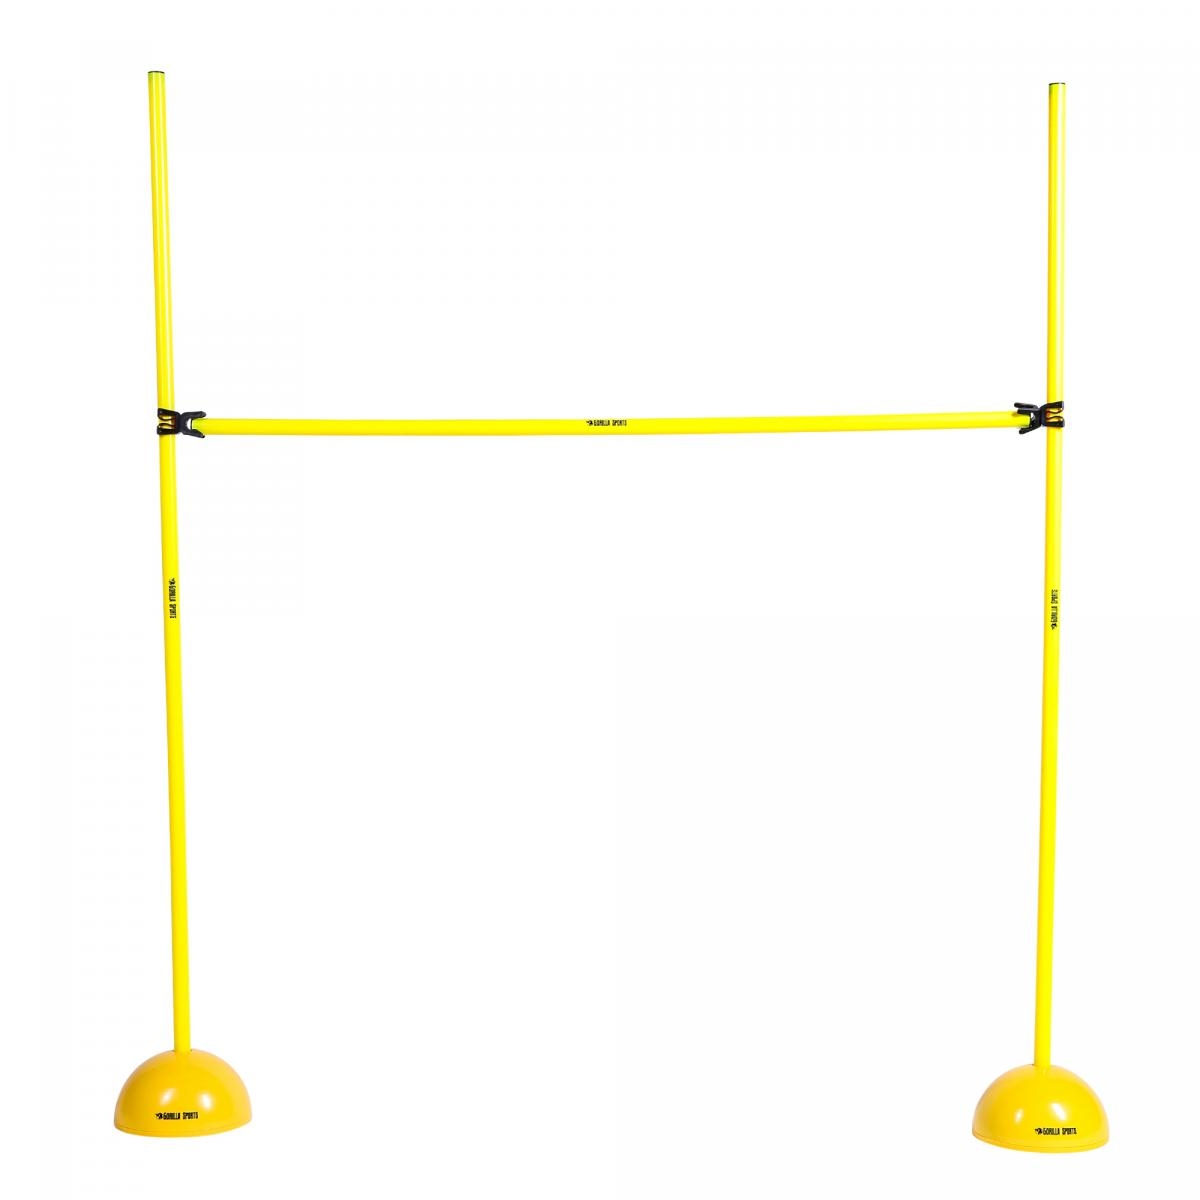 Sprungstangen-Set 3 Stangen 120 cm, 2 Vollgummi-Standfüße, 2 Leiterhürden gelb 